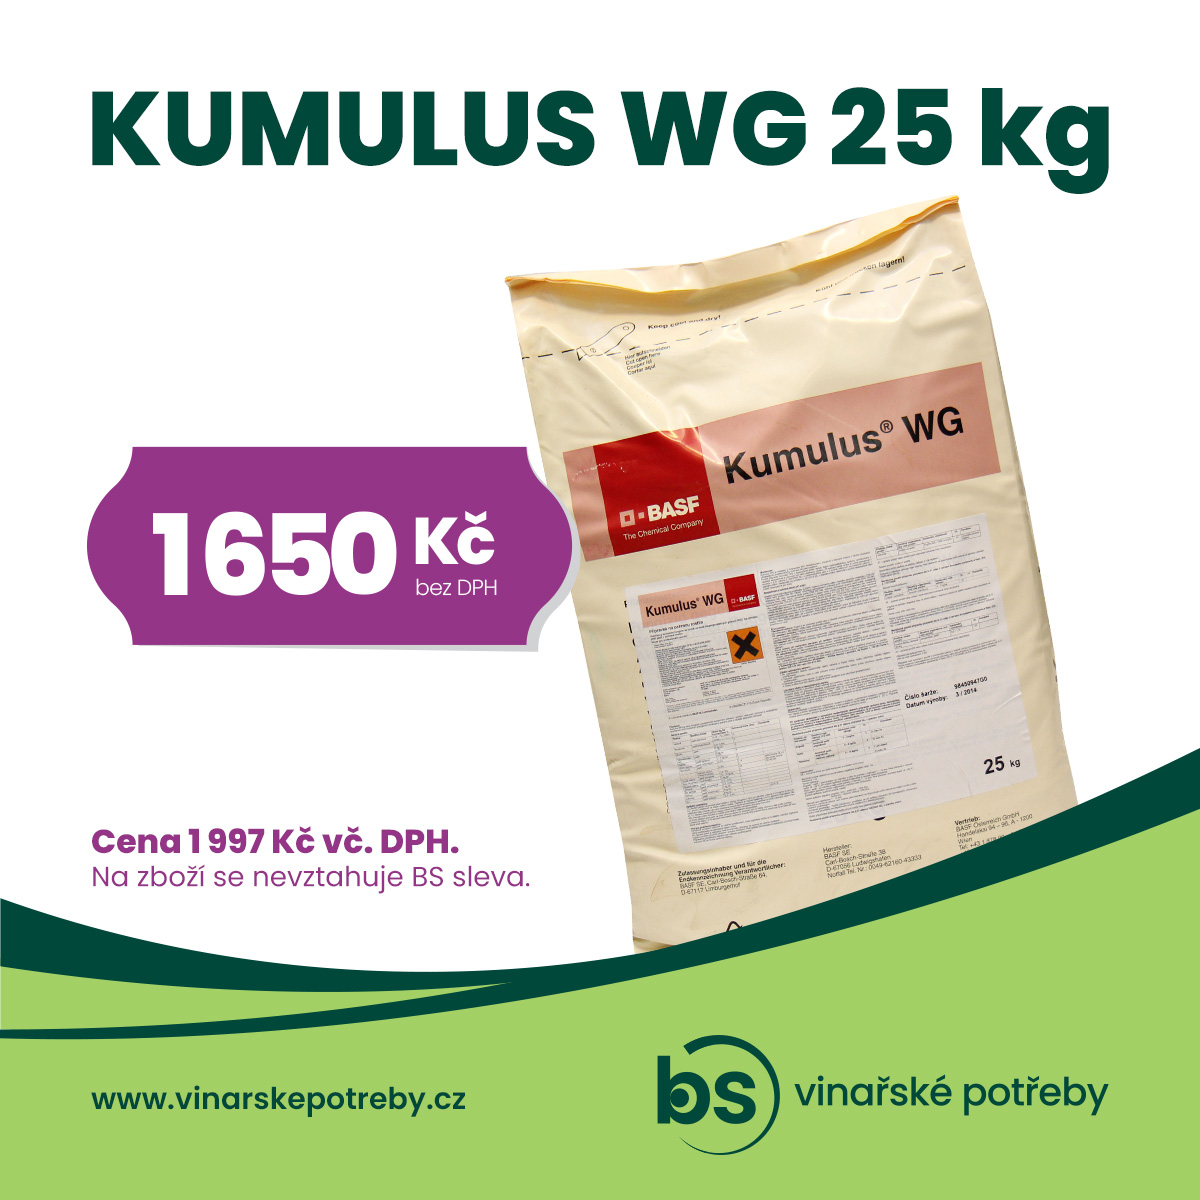 Kumulus 25 kg za skvělou cenu!